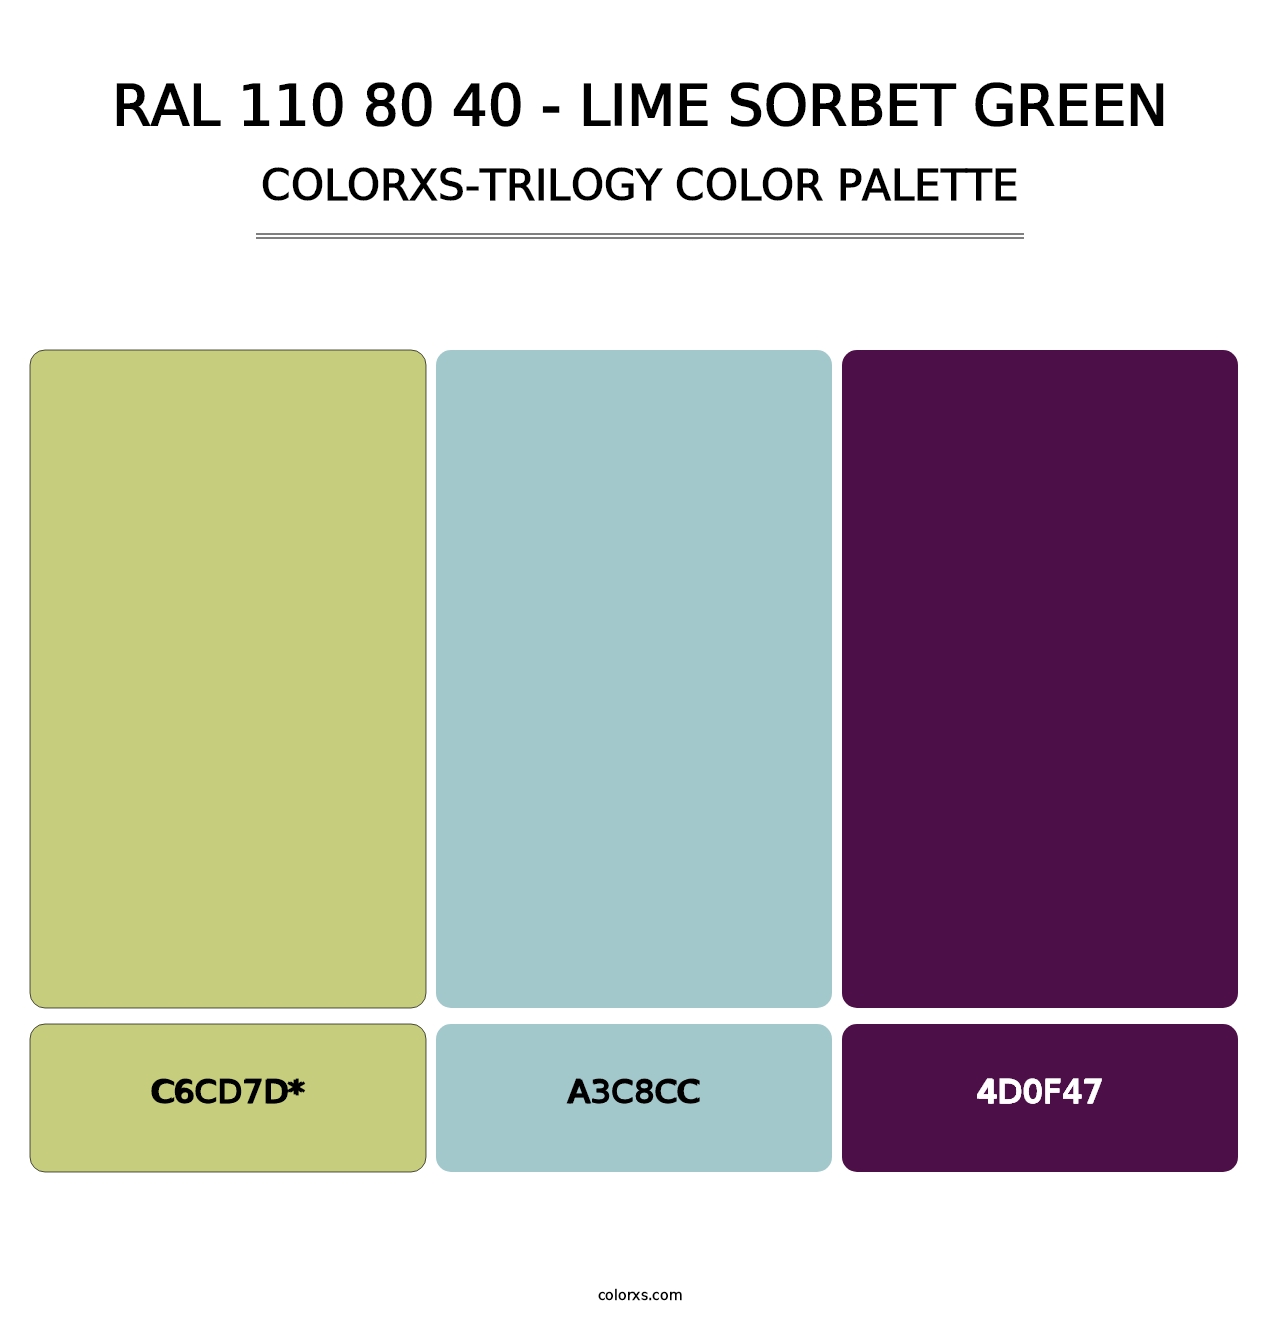 RAL 110 80 40 - Lime Sorbet Green - Colorxs Trilogy Palette